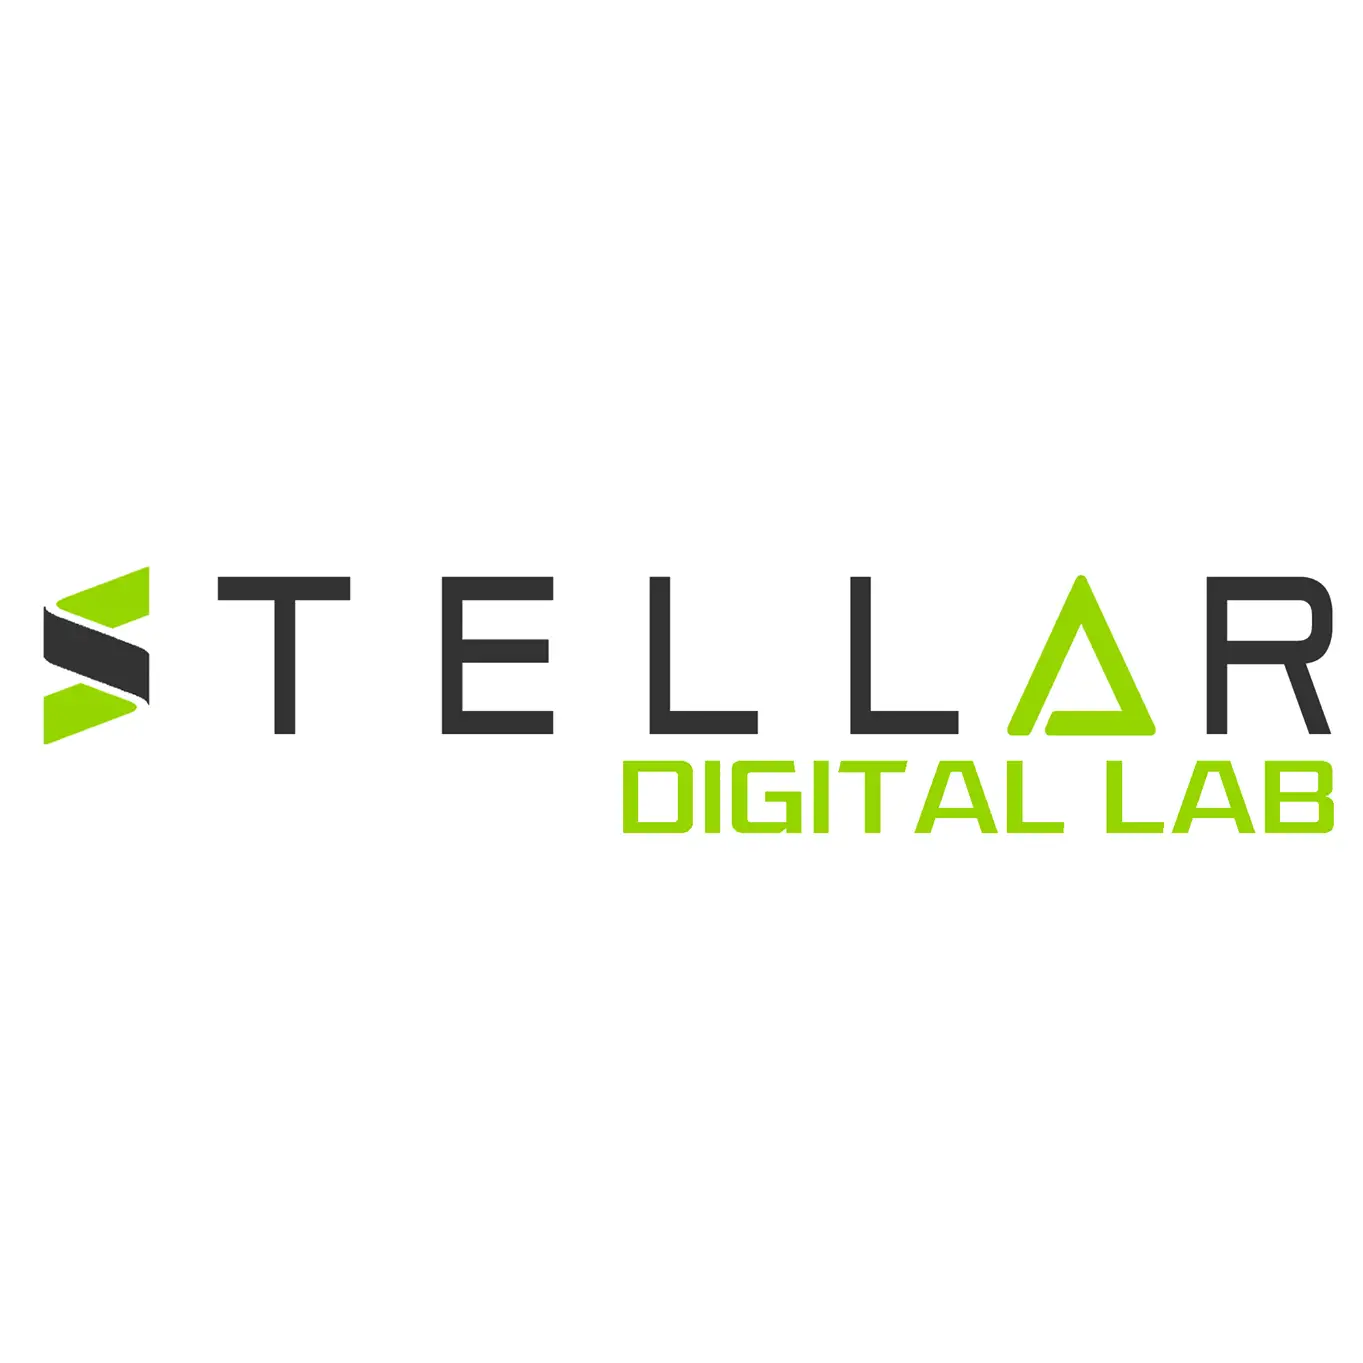 Business logo of Stellar Digital Lab